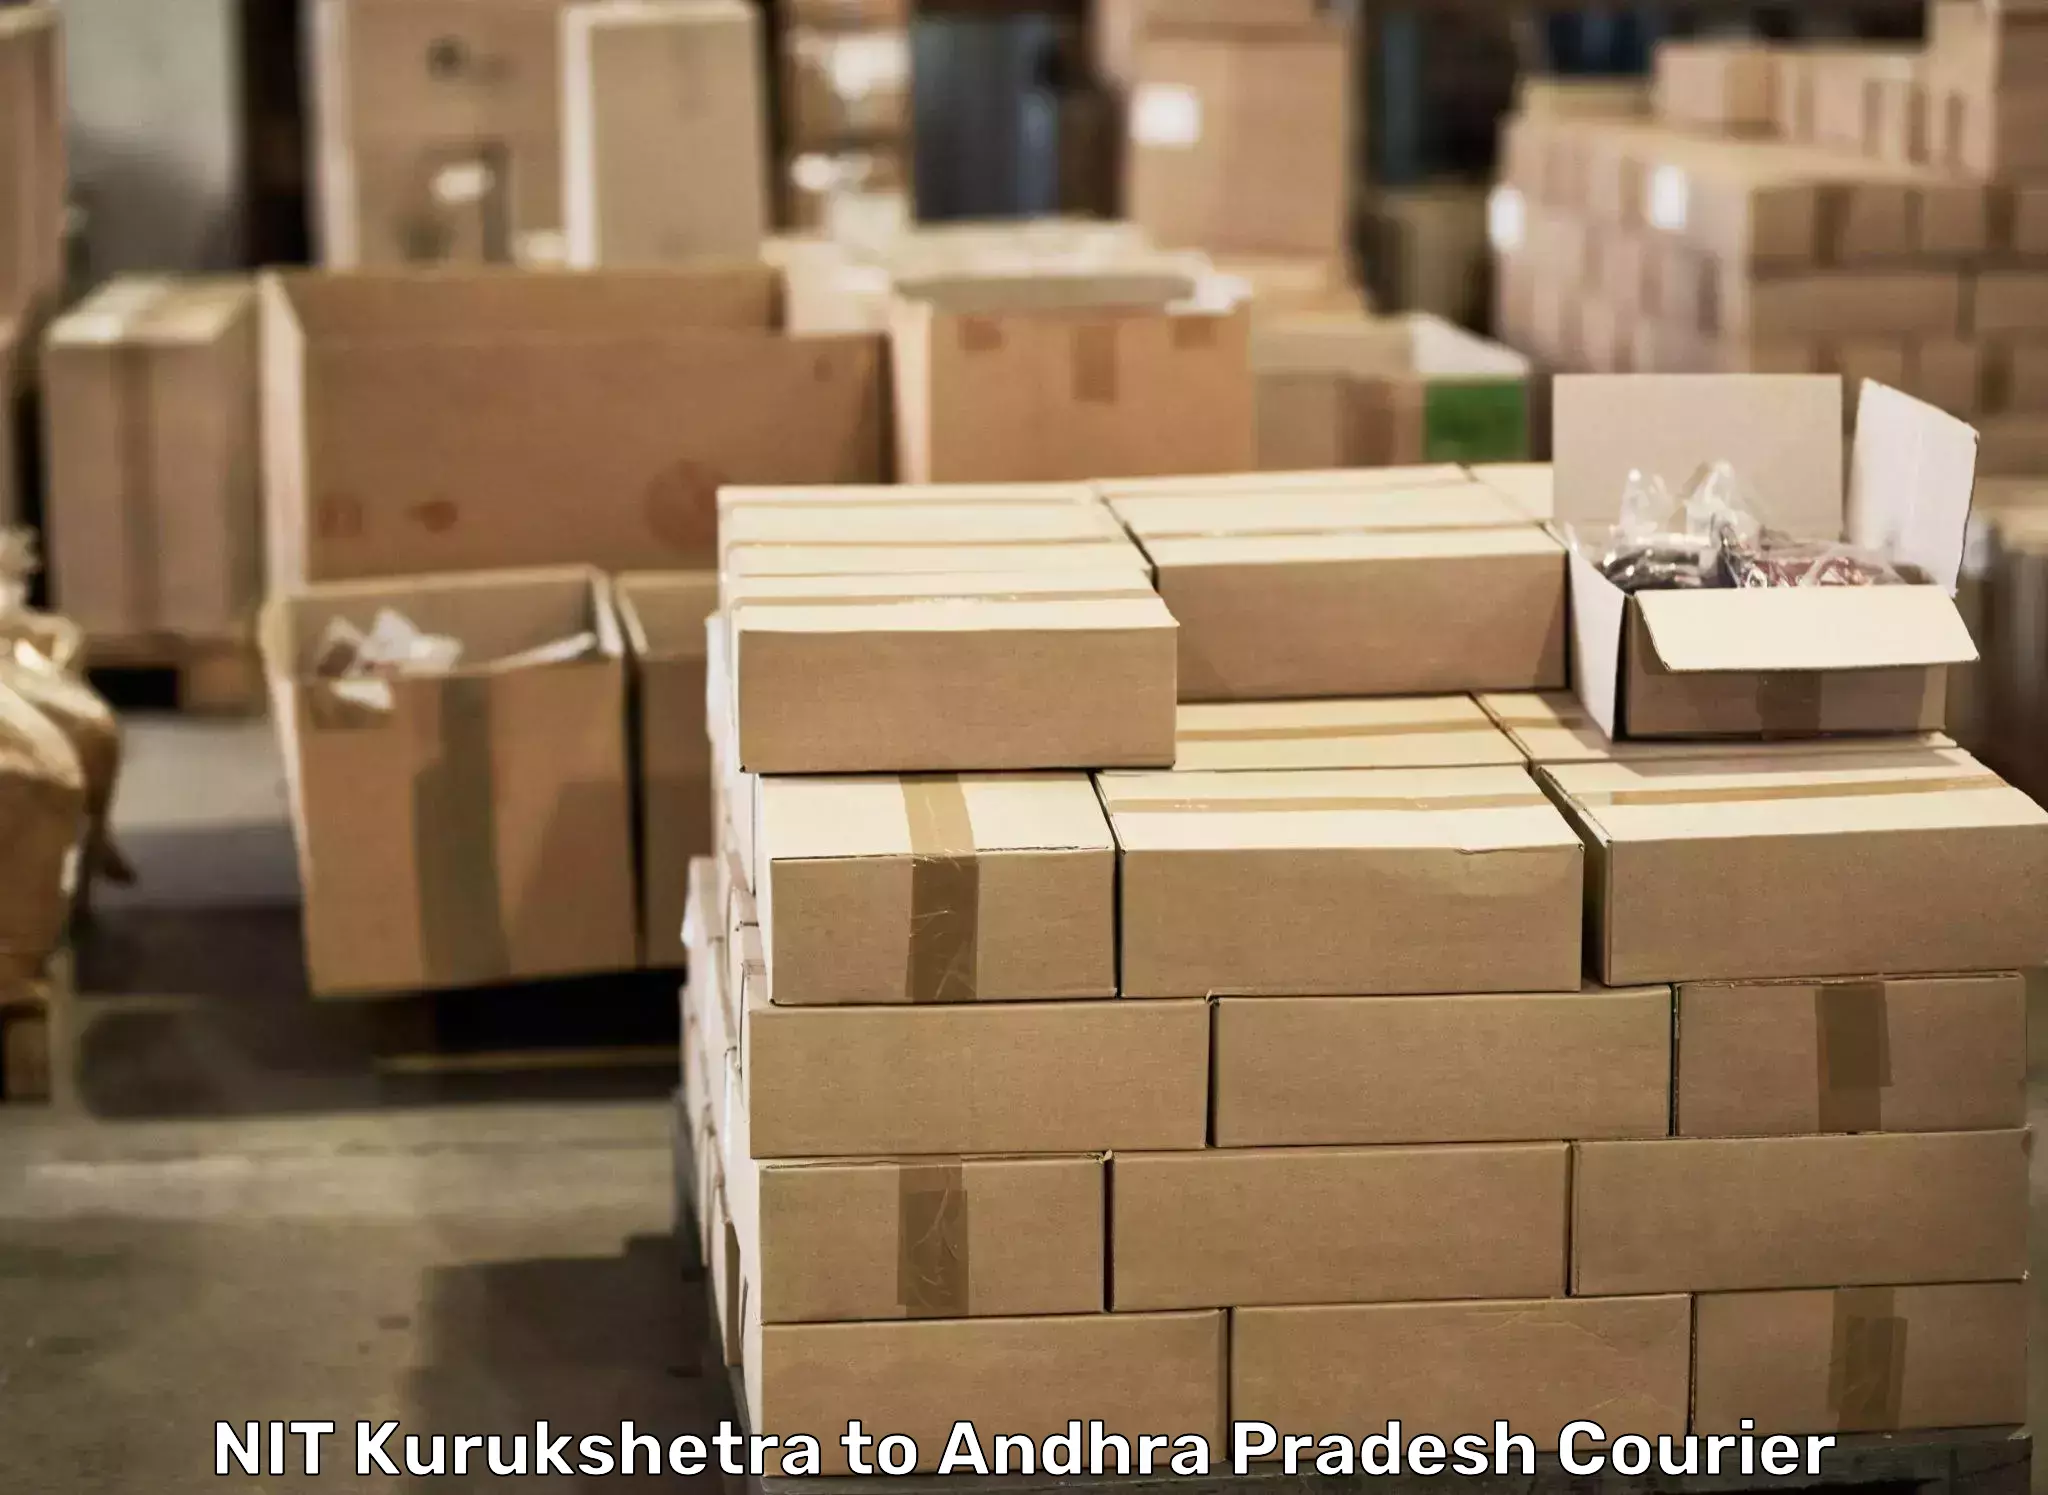 Professional relocation services NIT Kurukshetra to Tekkali